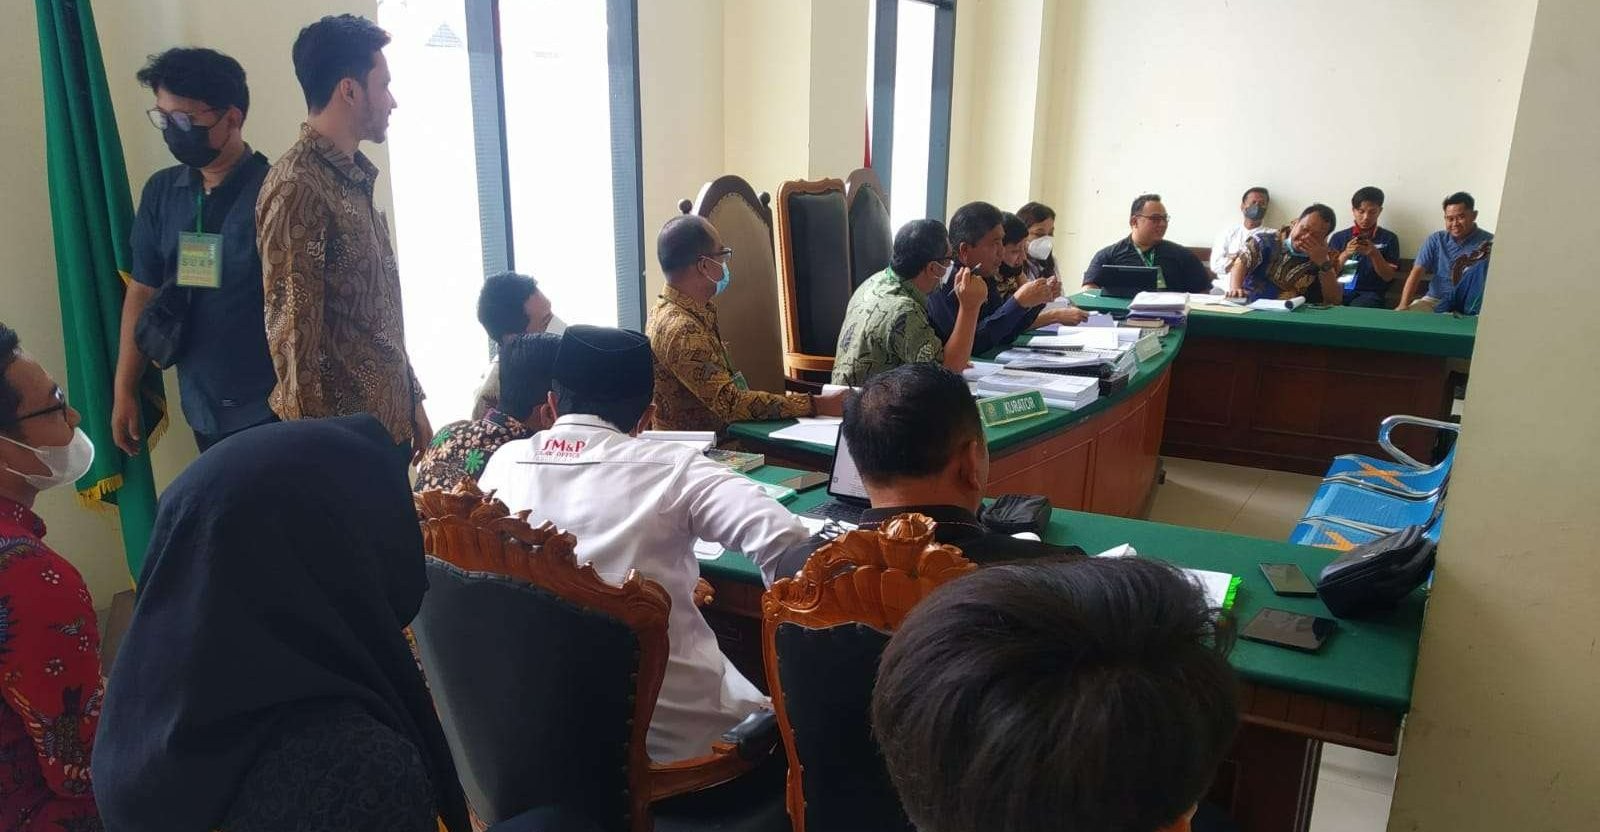 Mayoritas kreditur menyetujui proposal perdamaian PKPU yang diajukan PT Meratus Line pada rapat pembahasan perdamaian di Pengadilan Niaga pada Pengadilan Negeri Surabaya, Selasa, 8 November 2022. (Foto: dok Meratus Line)